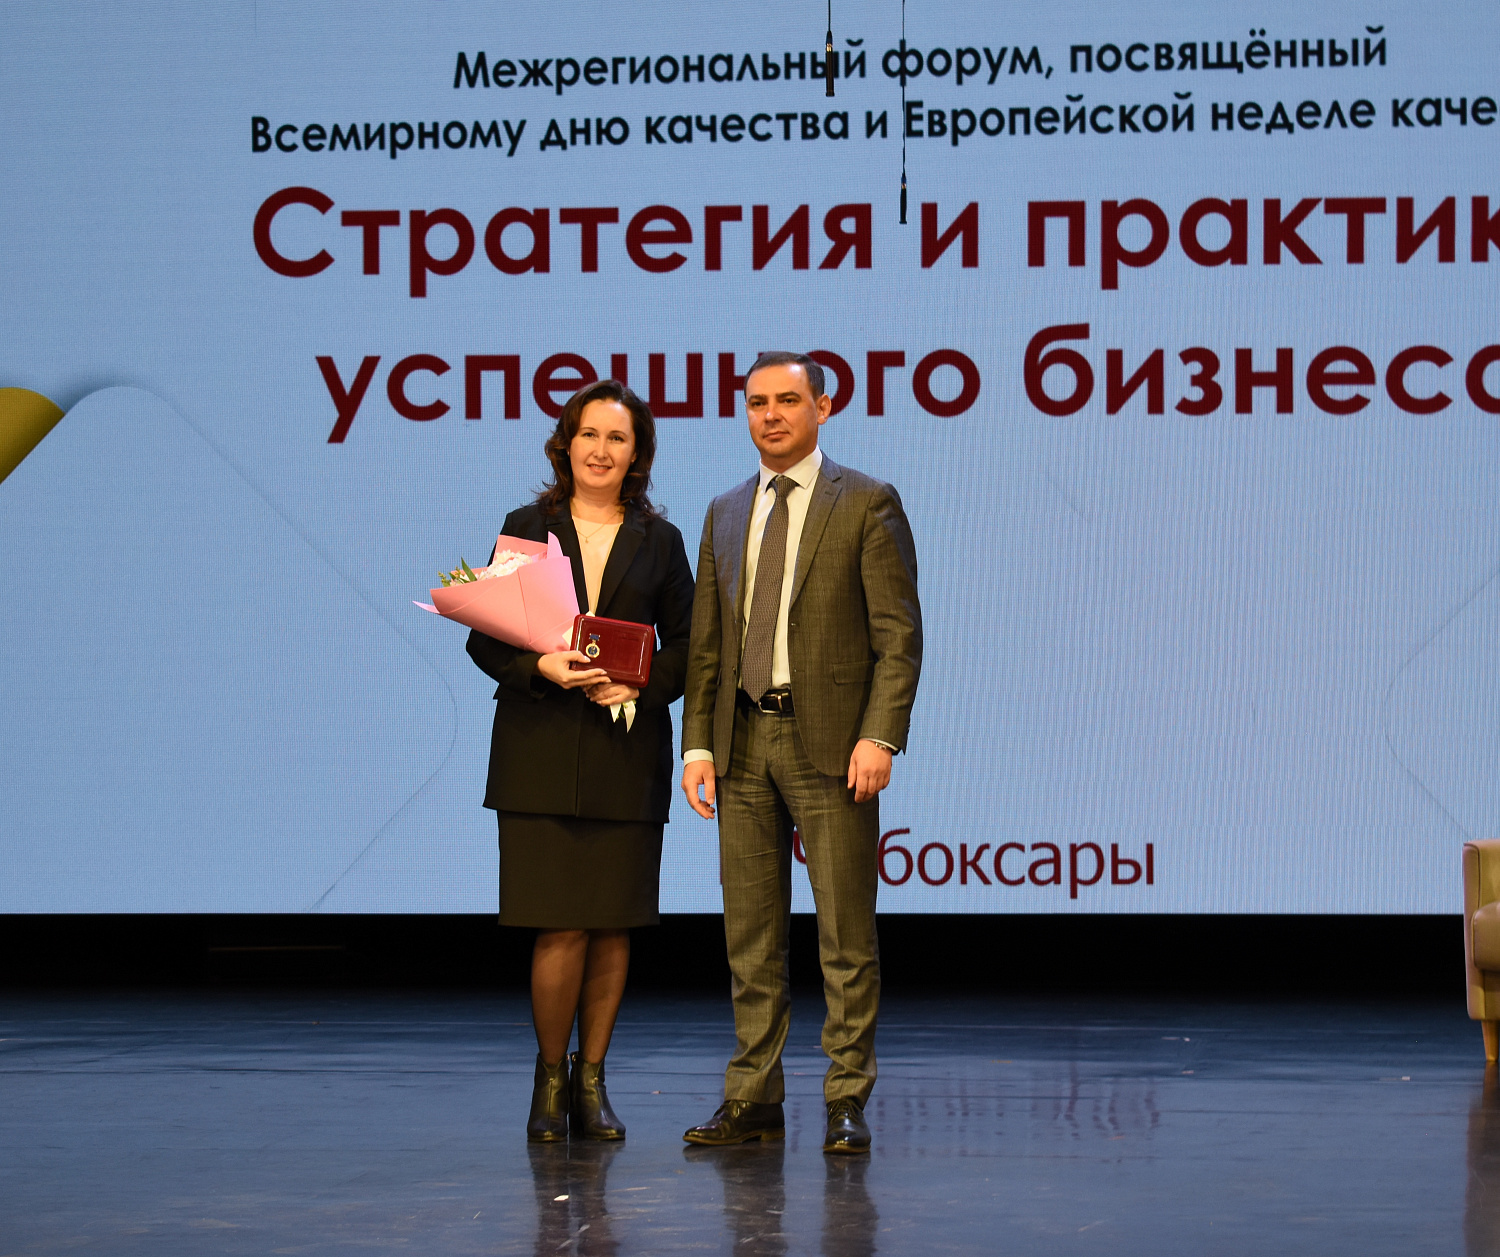 Поздравляем Парамонову Алену Николаевну!